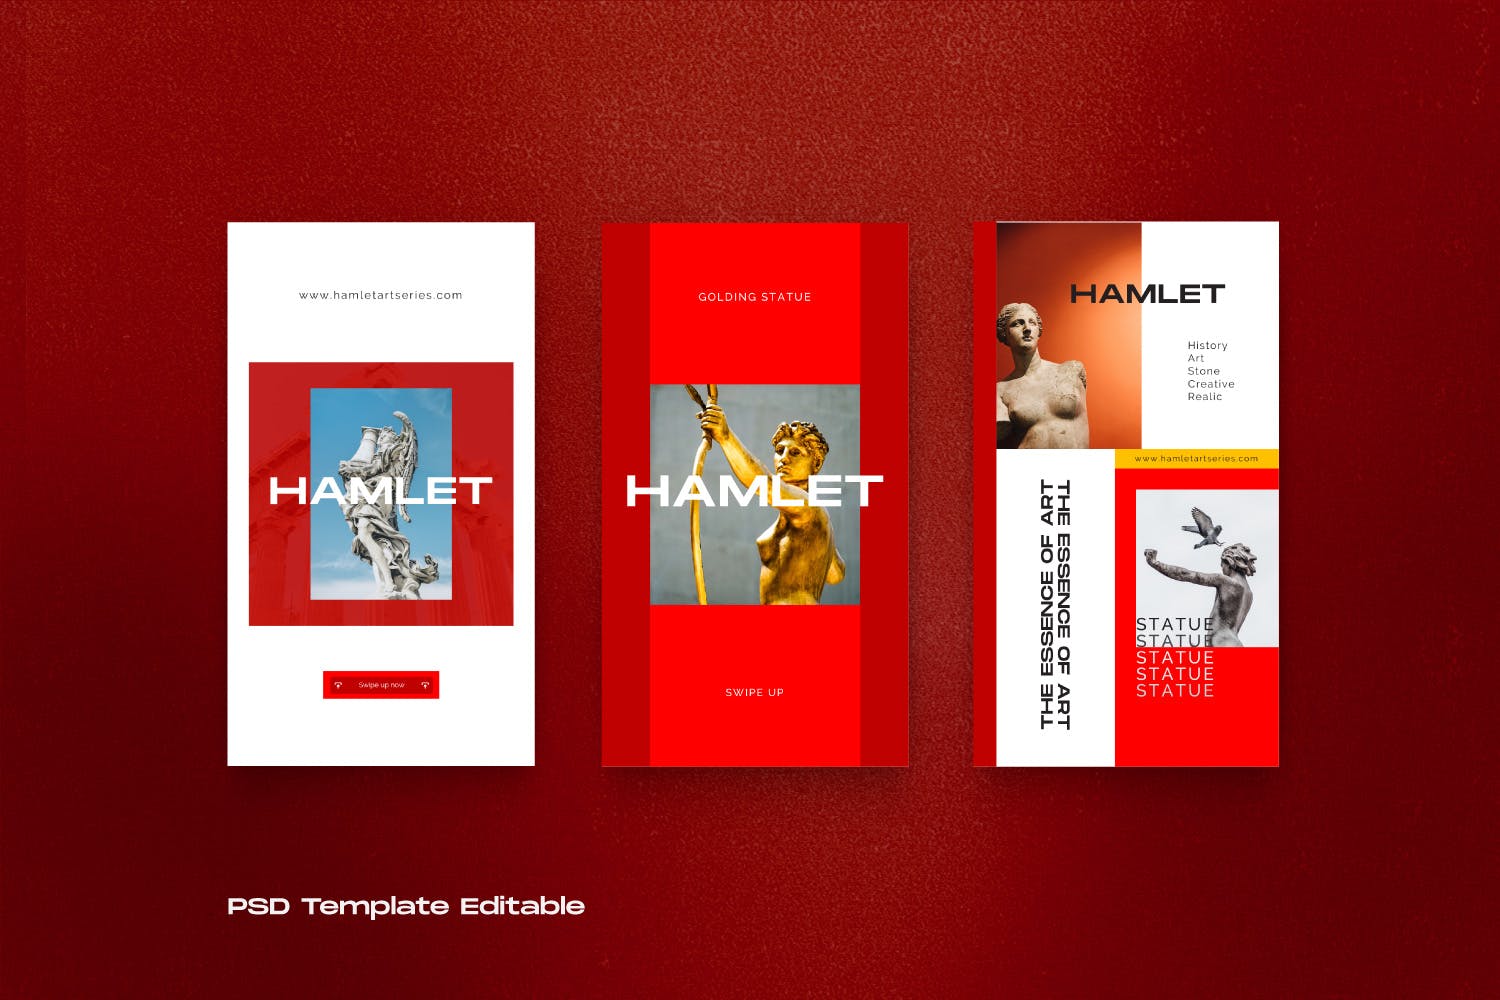 红色设计风格Instagram贴图&品牌故事设计素材包v2 HAMLET PACK 2 – Instagram Template + Stories插图5